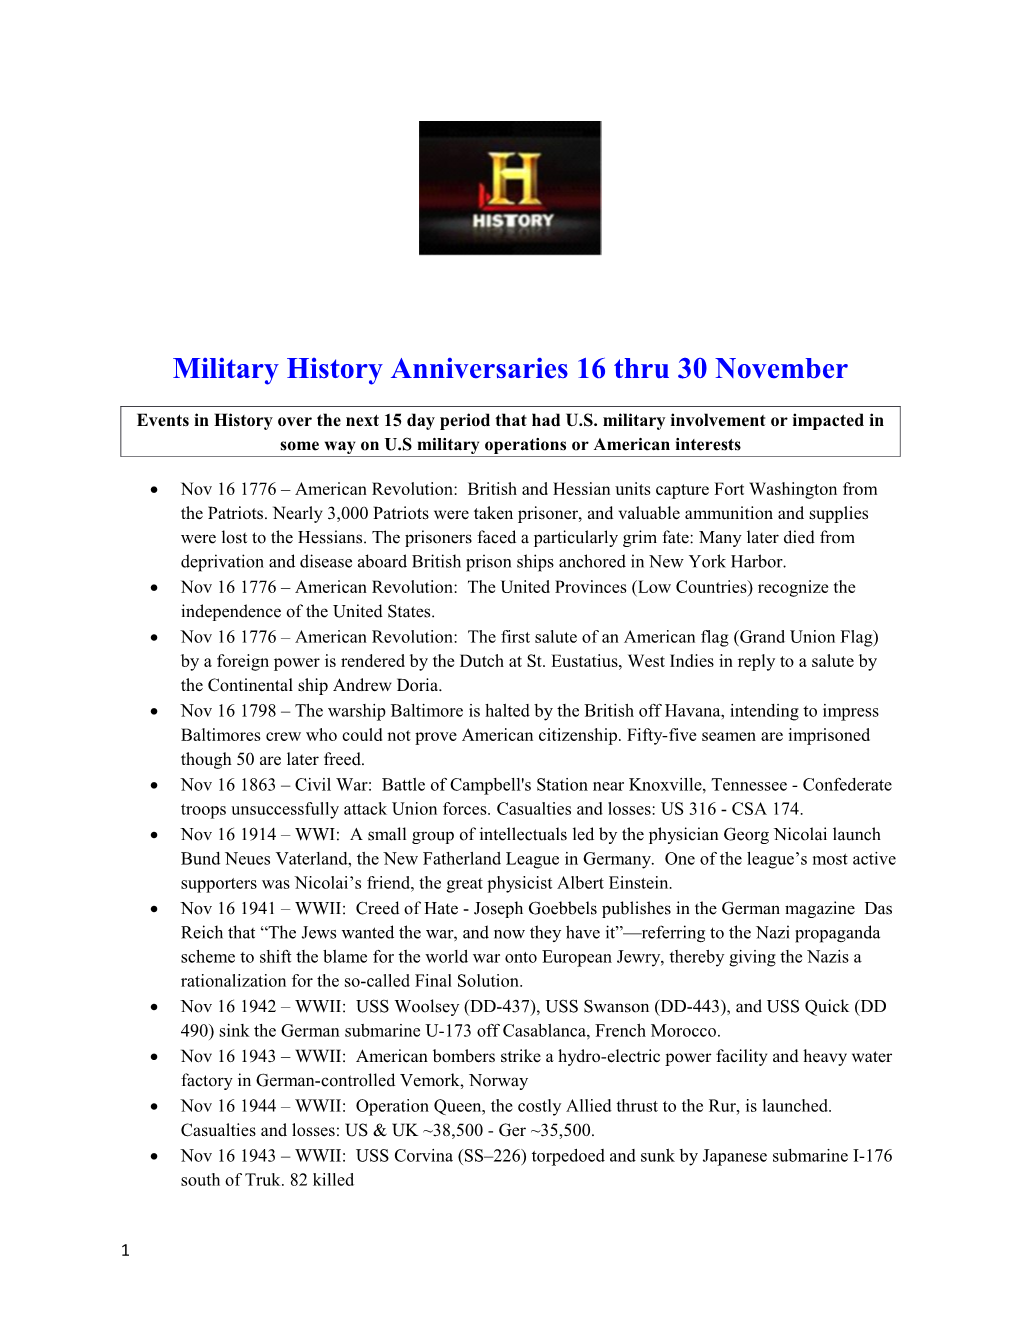 Military History Anniversaries 16 Thru 30 November